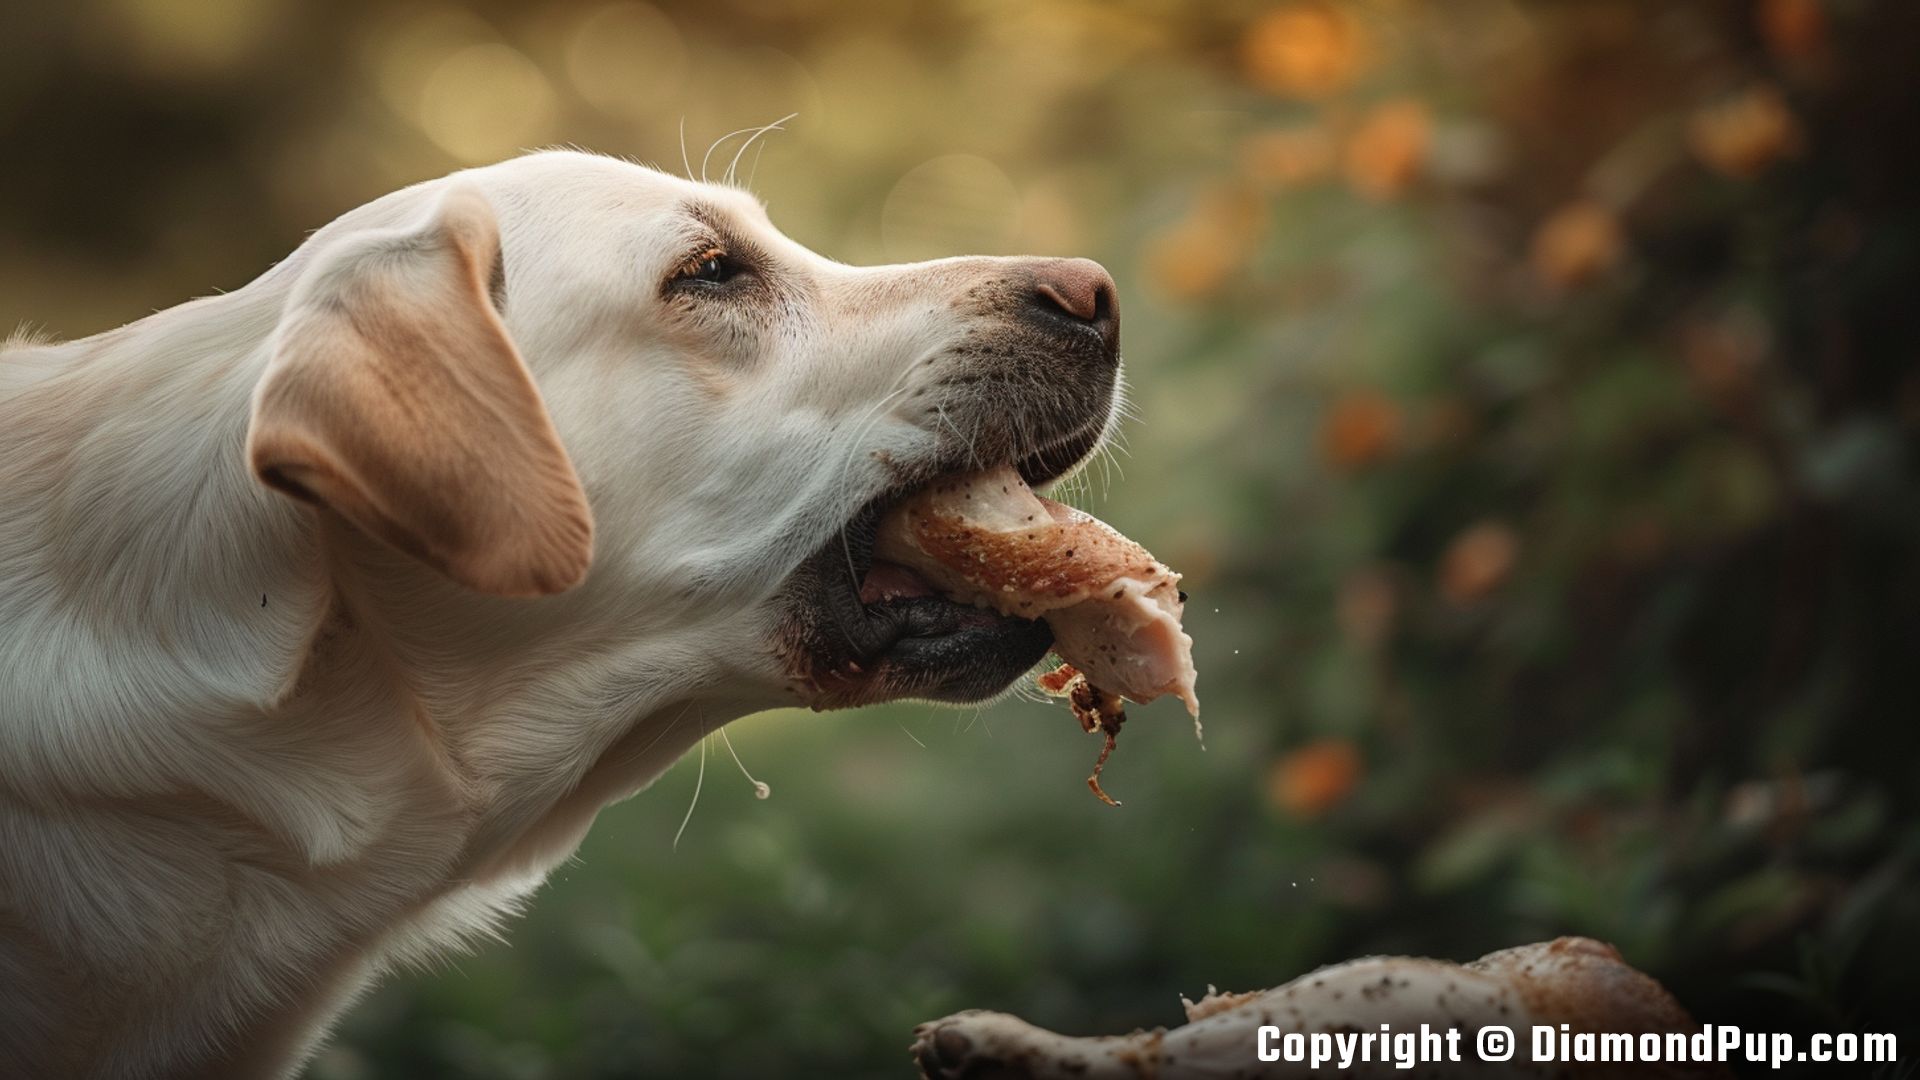 Photograph of an Adorable Labrador Snacking on Chicken